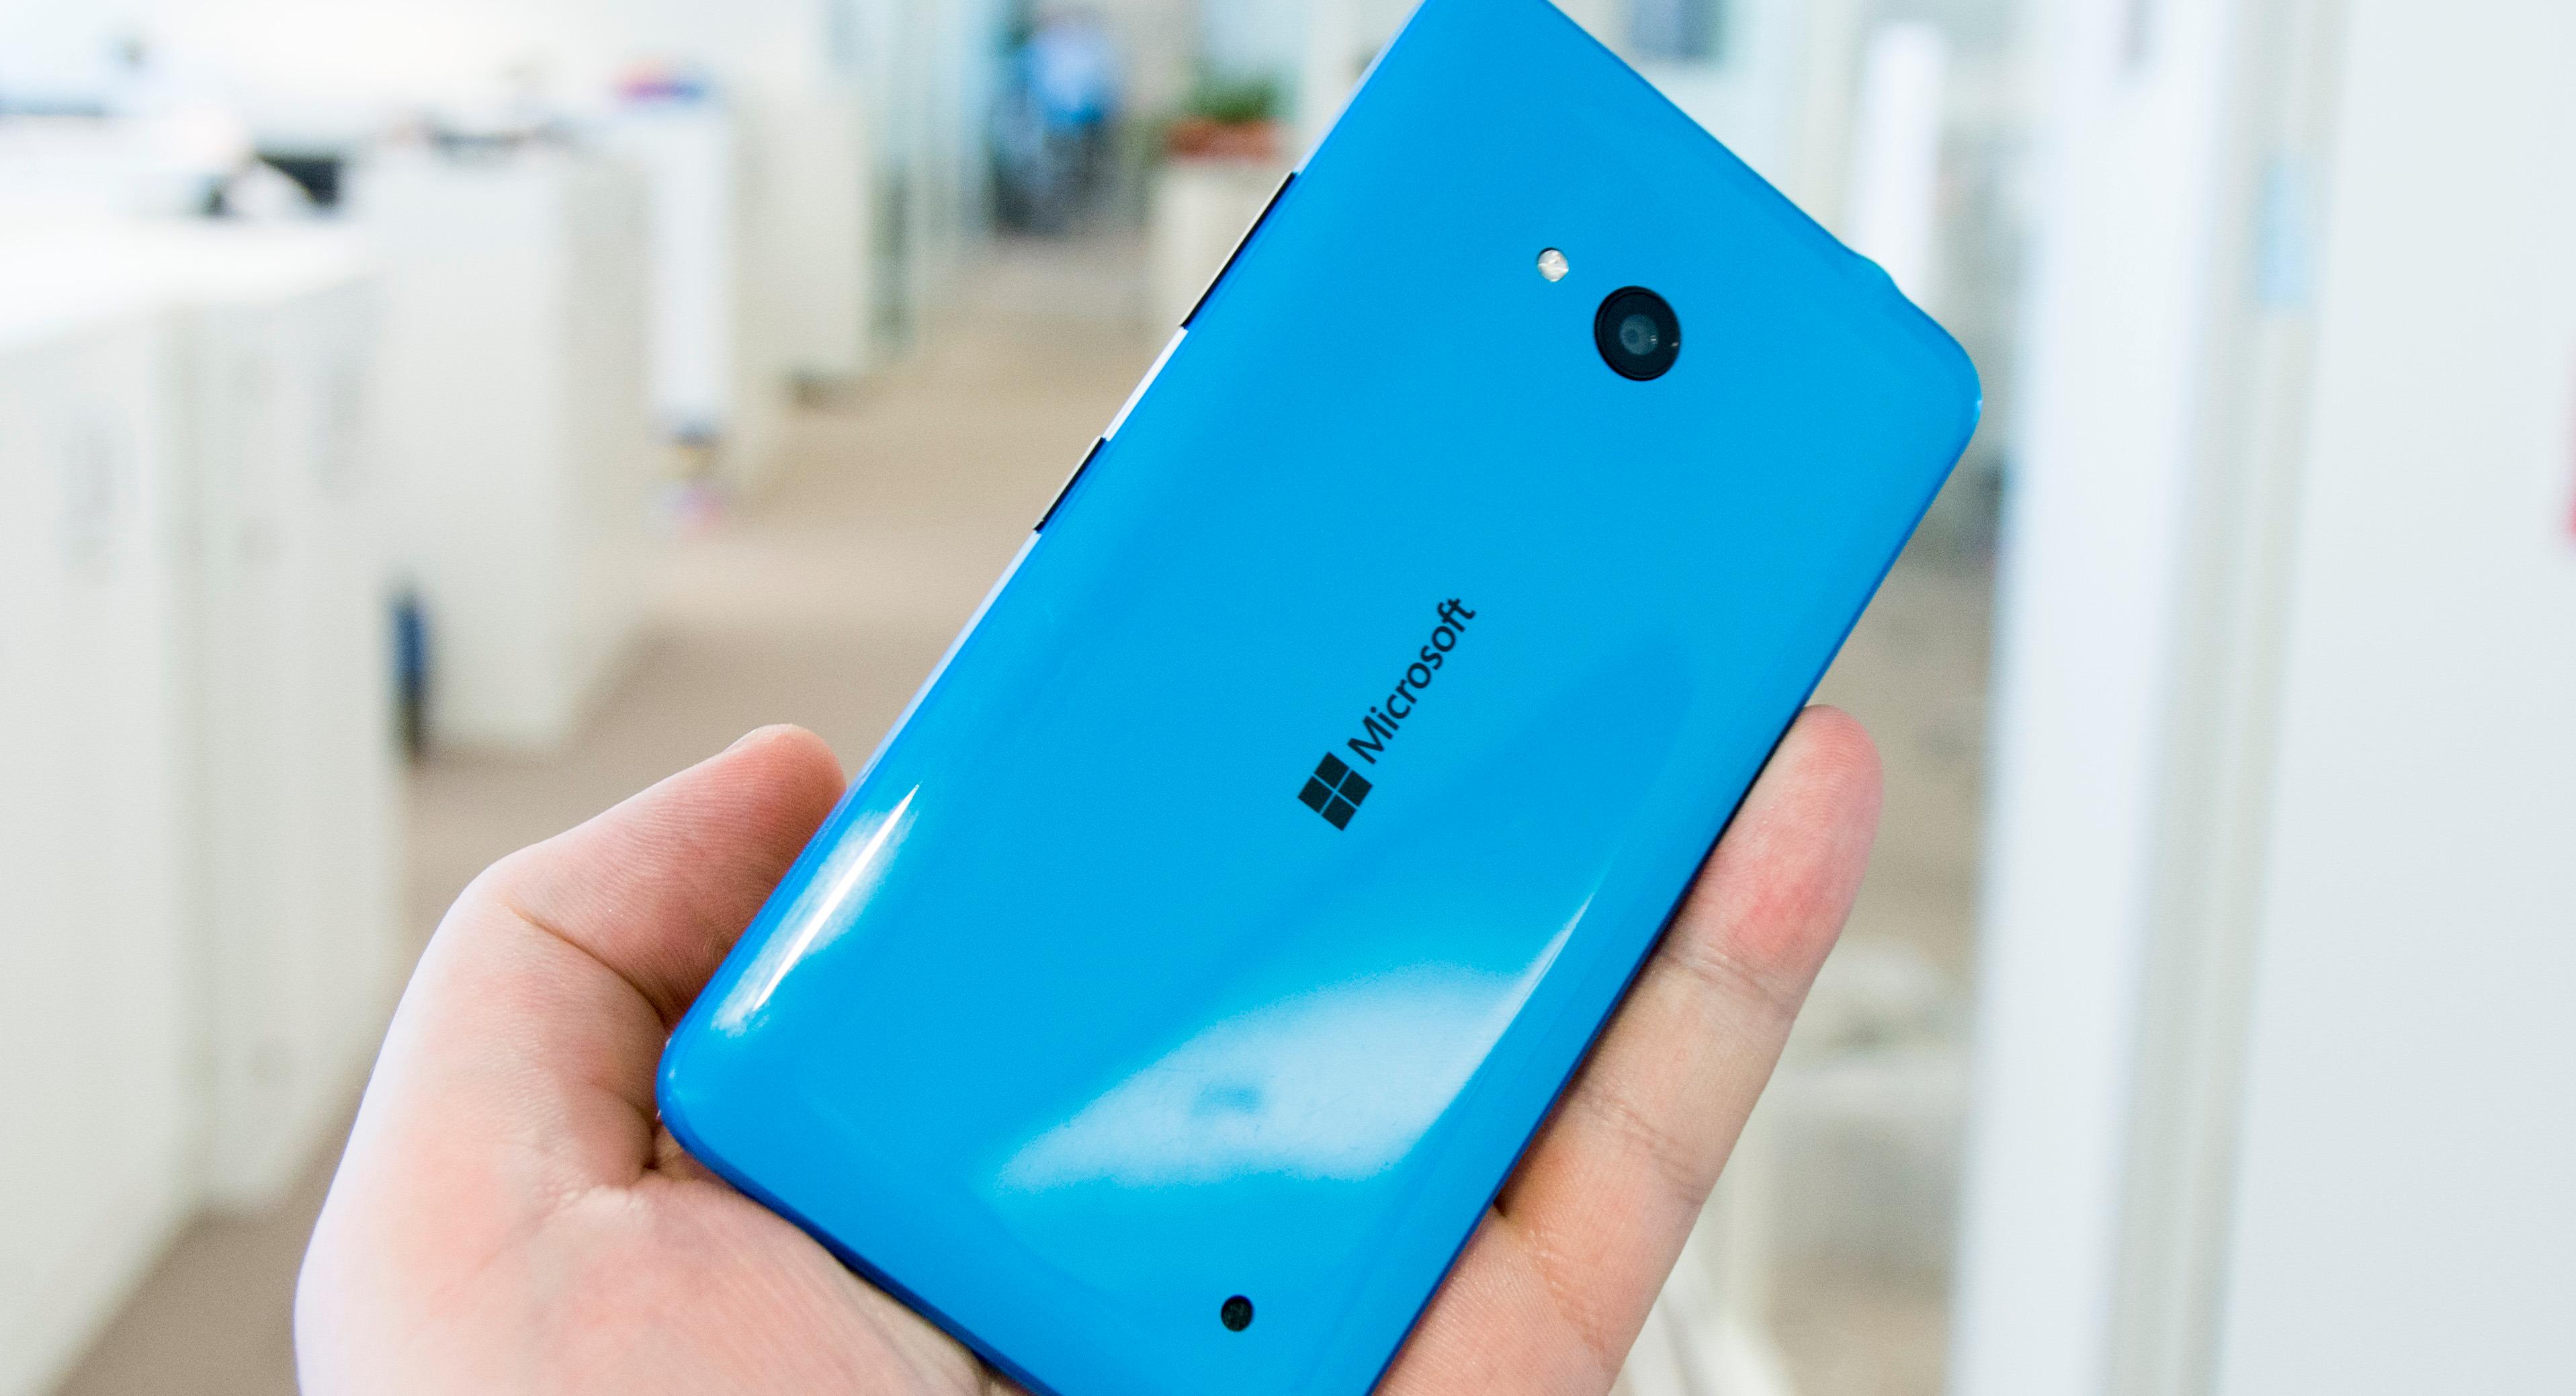 Knapt noen telefon de siste månedene har overrasket oss på en så positiv måte som Lumia 640. Her får du en skikkelig god brukeropplevelse til gi-bort-pris. Foto: Finn Jarle Kvalheim, Tek.no